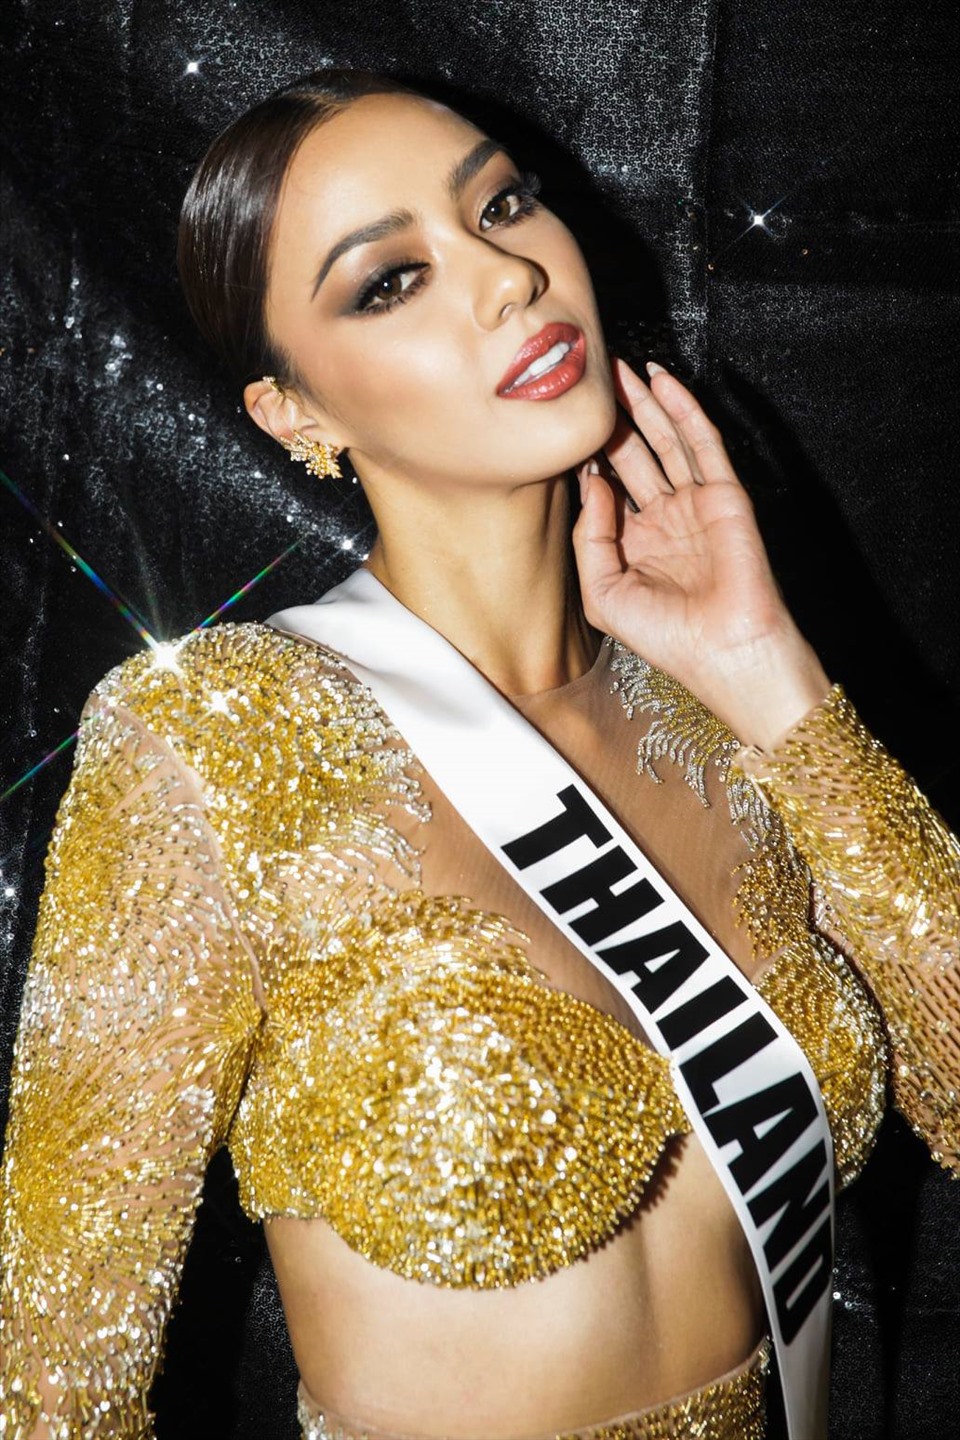 Dàn thí sinh Miss Universe được đánh giá cao về nhan sắc lẫn hình thể. Ảnh: Miss Universe.